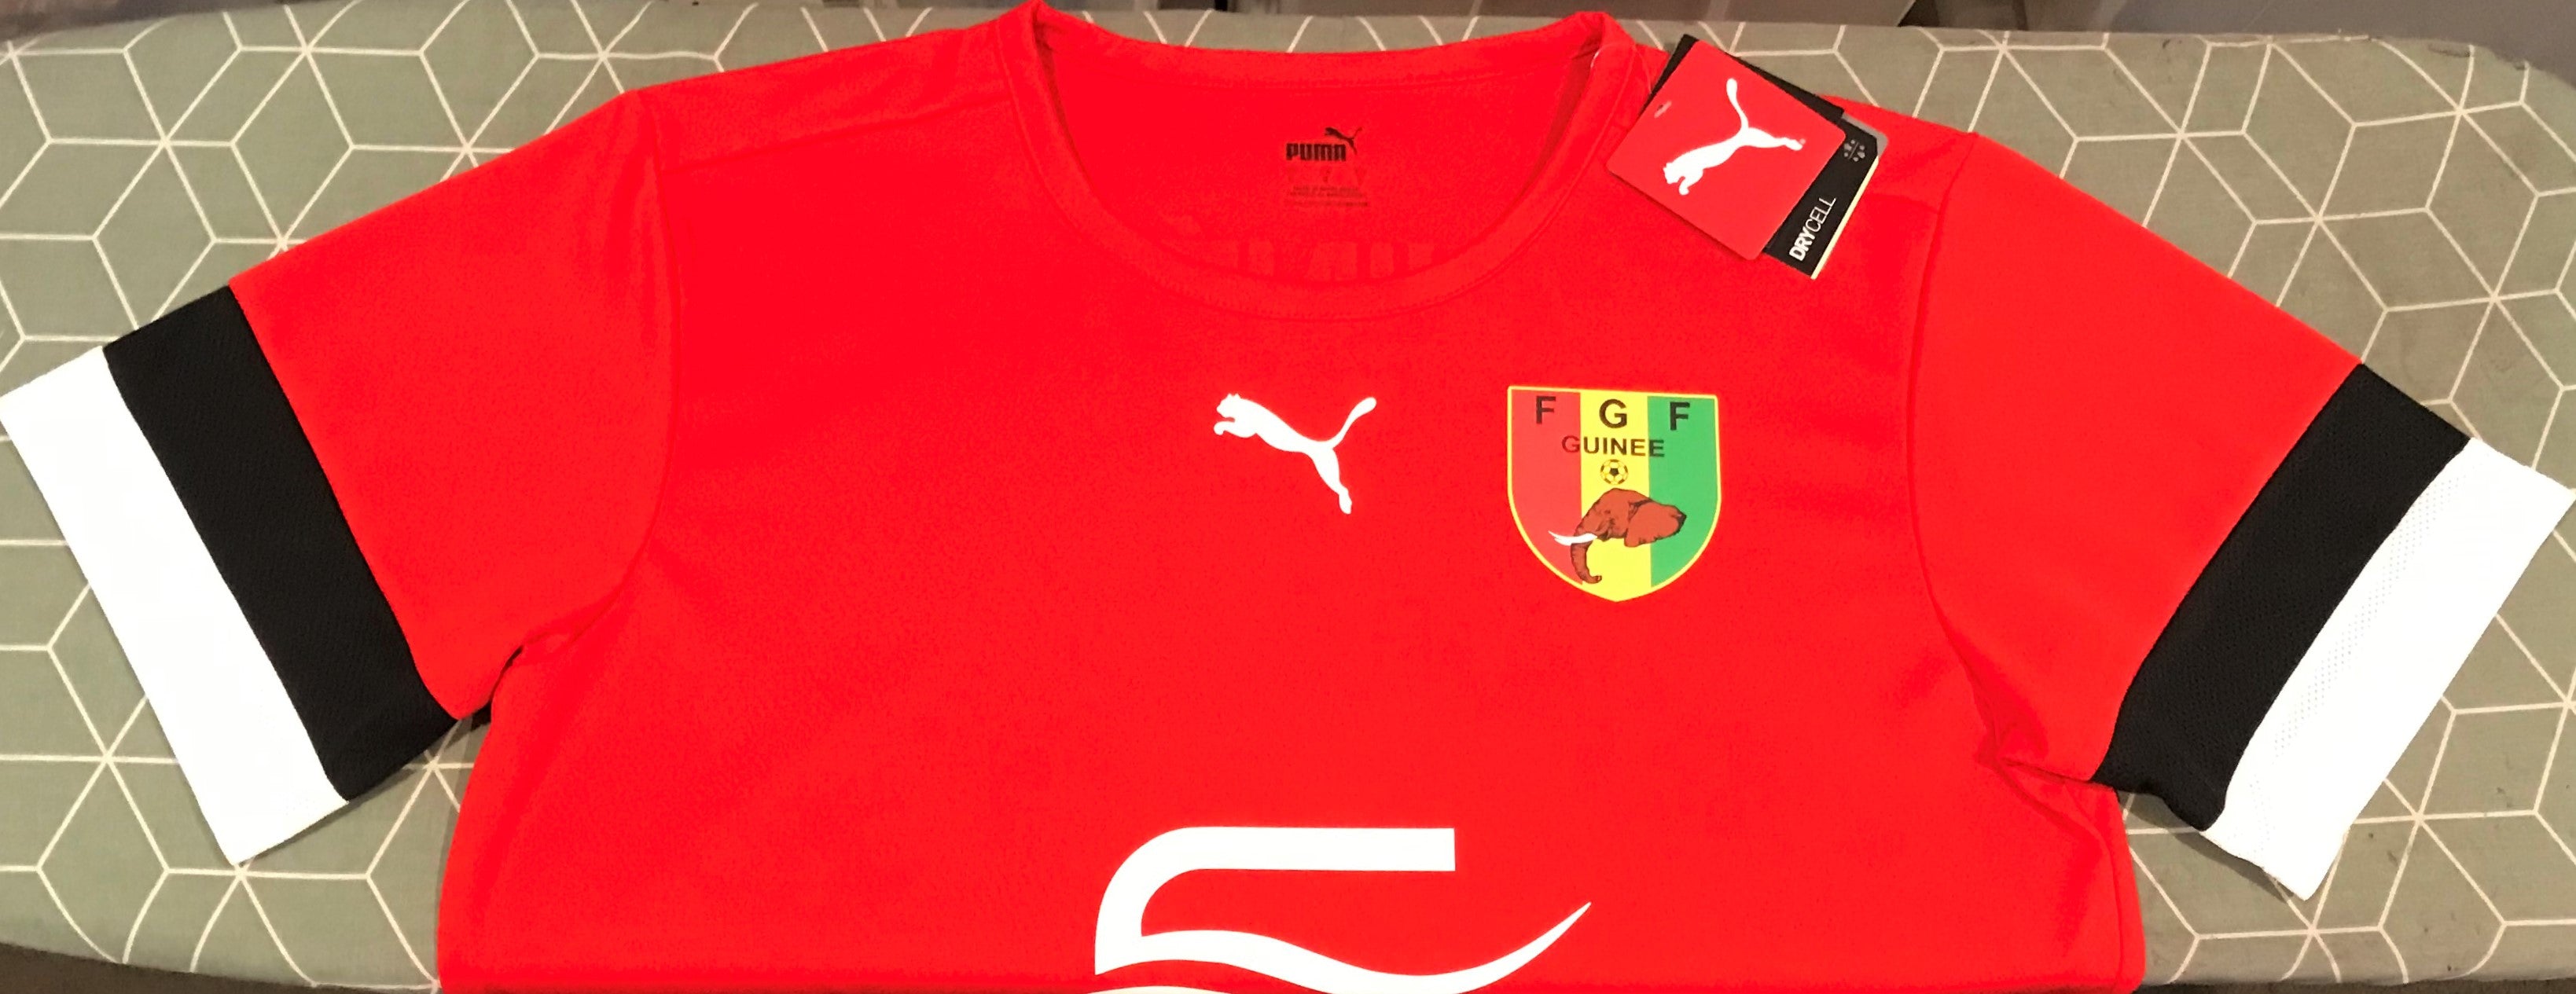 Guinea 2022 Training Jersey/Shirt